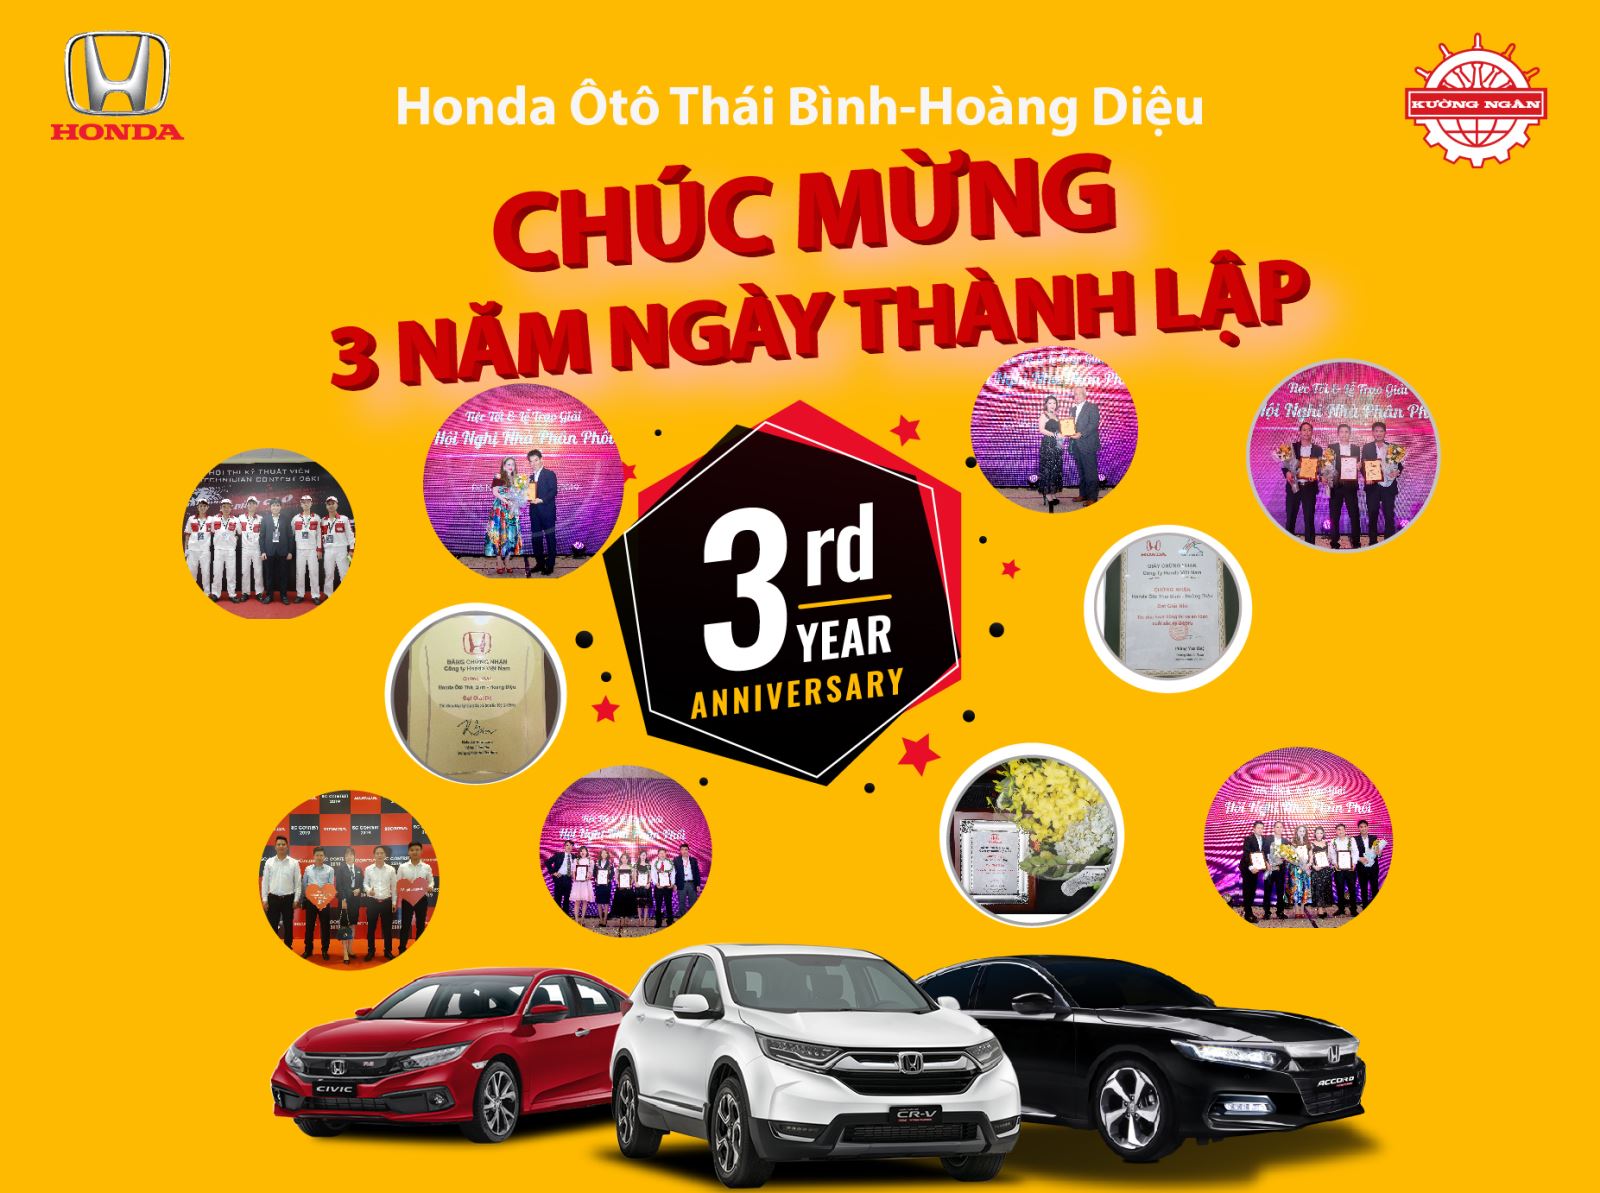 Kỷ niệm 3 năm ngày thành lập Honda Ôtô Thái Bình - Hoàng Diệu.